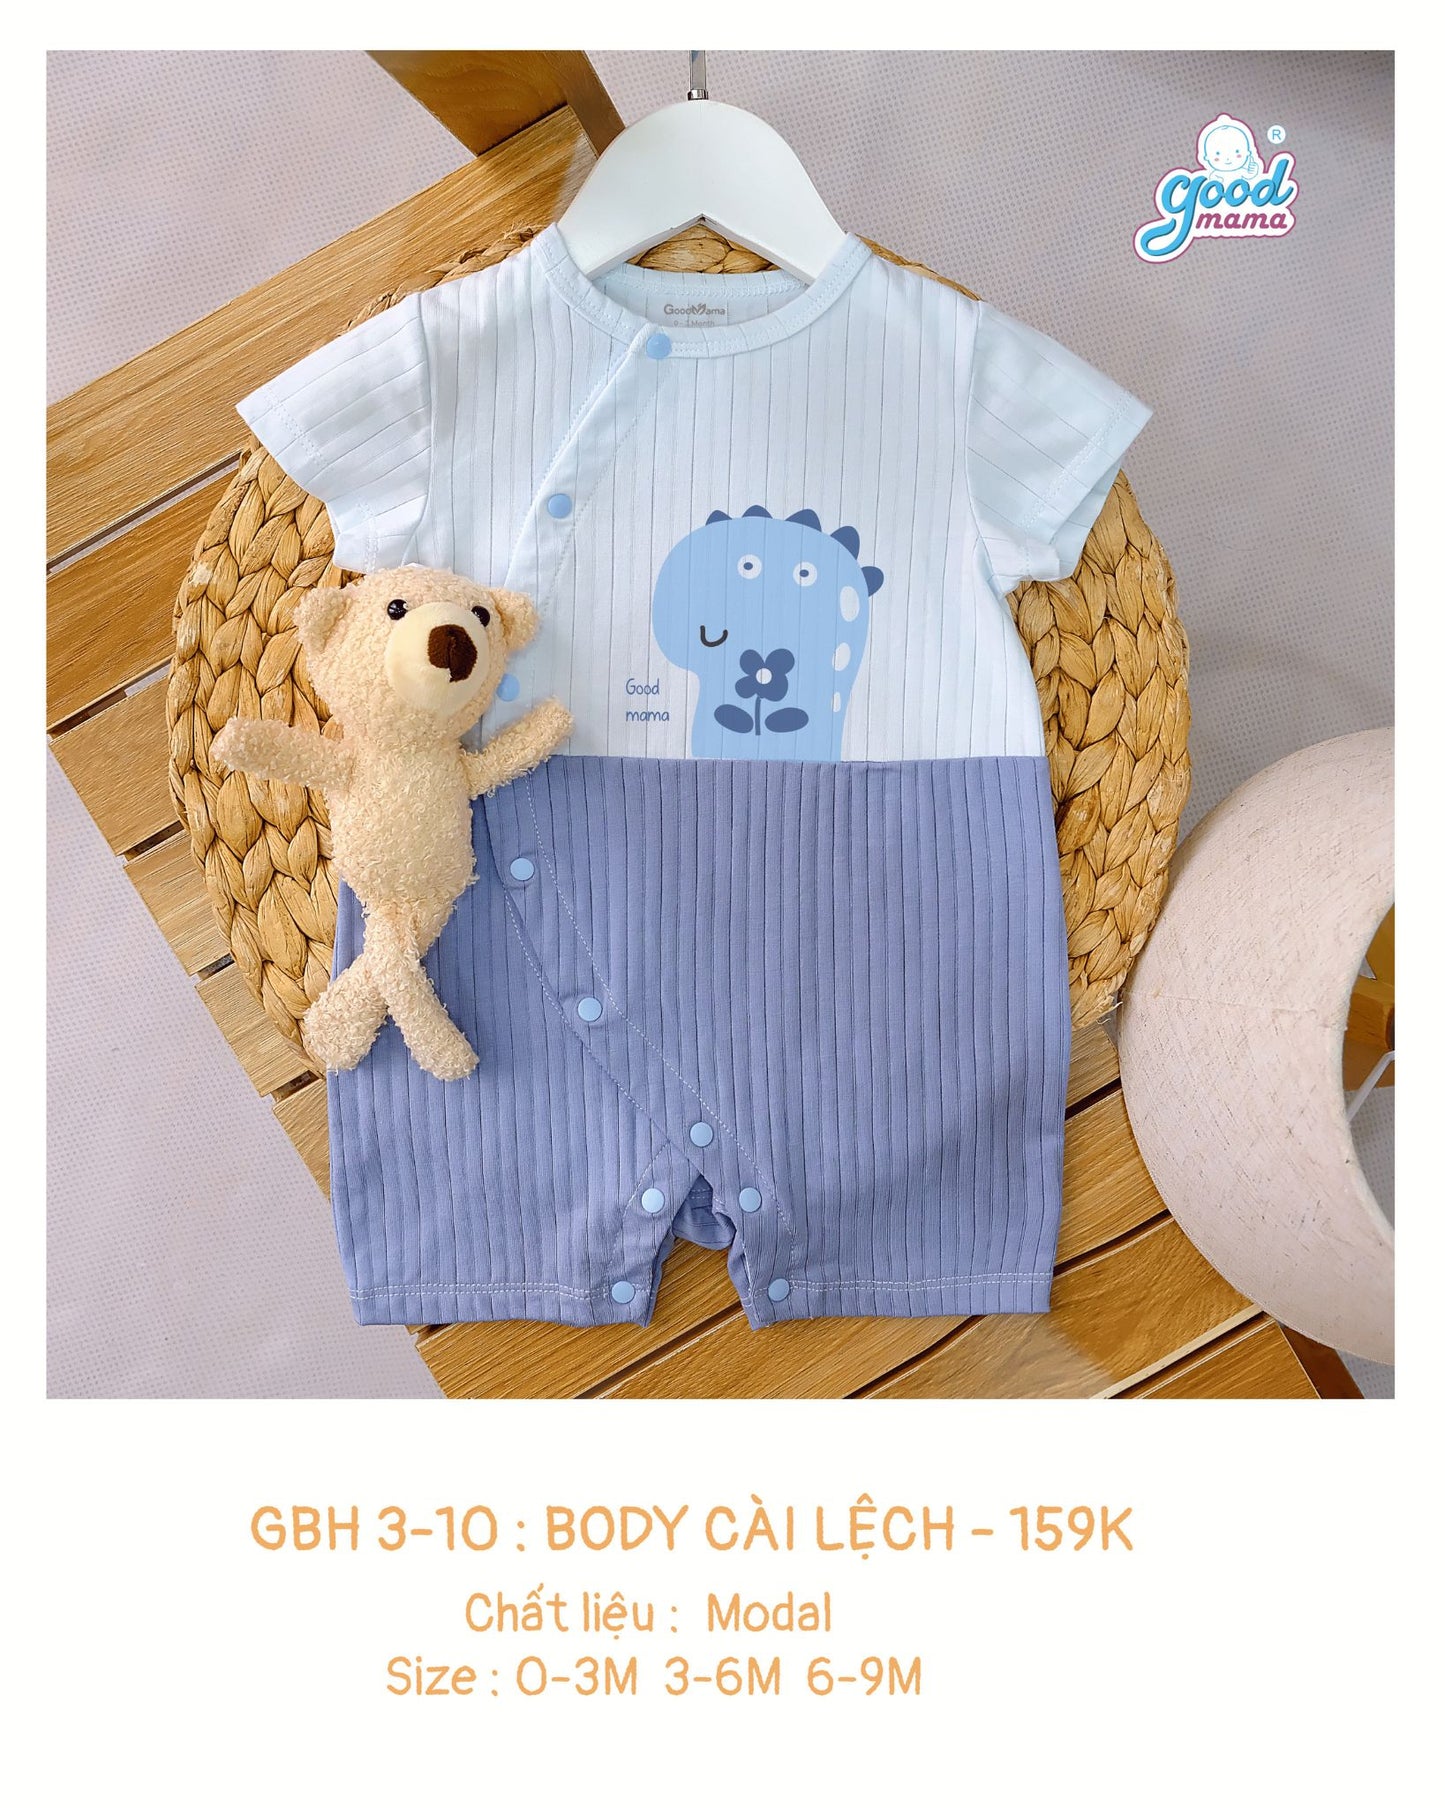 GBH3-10: Bodysuit Cho Bé Sơ Sinh trai gái Goodmama chất liệu Cotton Organic size từ 0-9 tháng tuổi